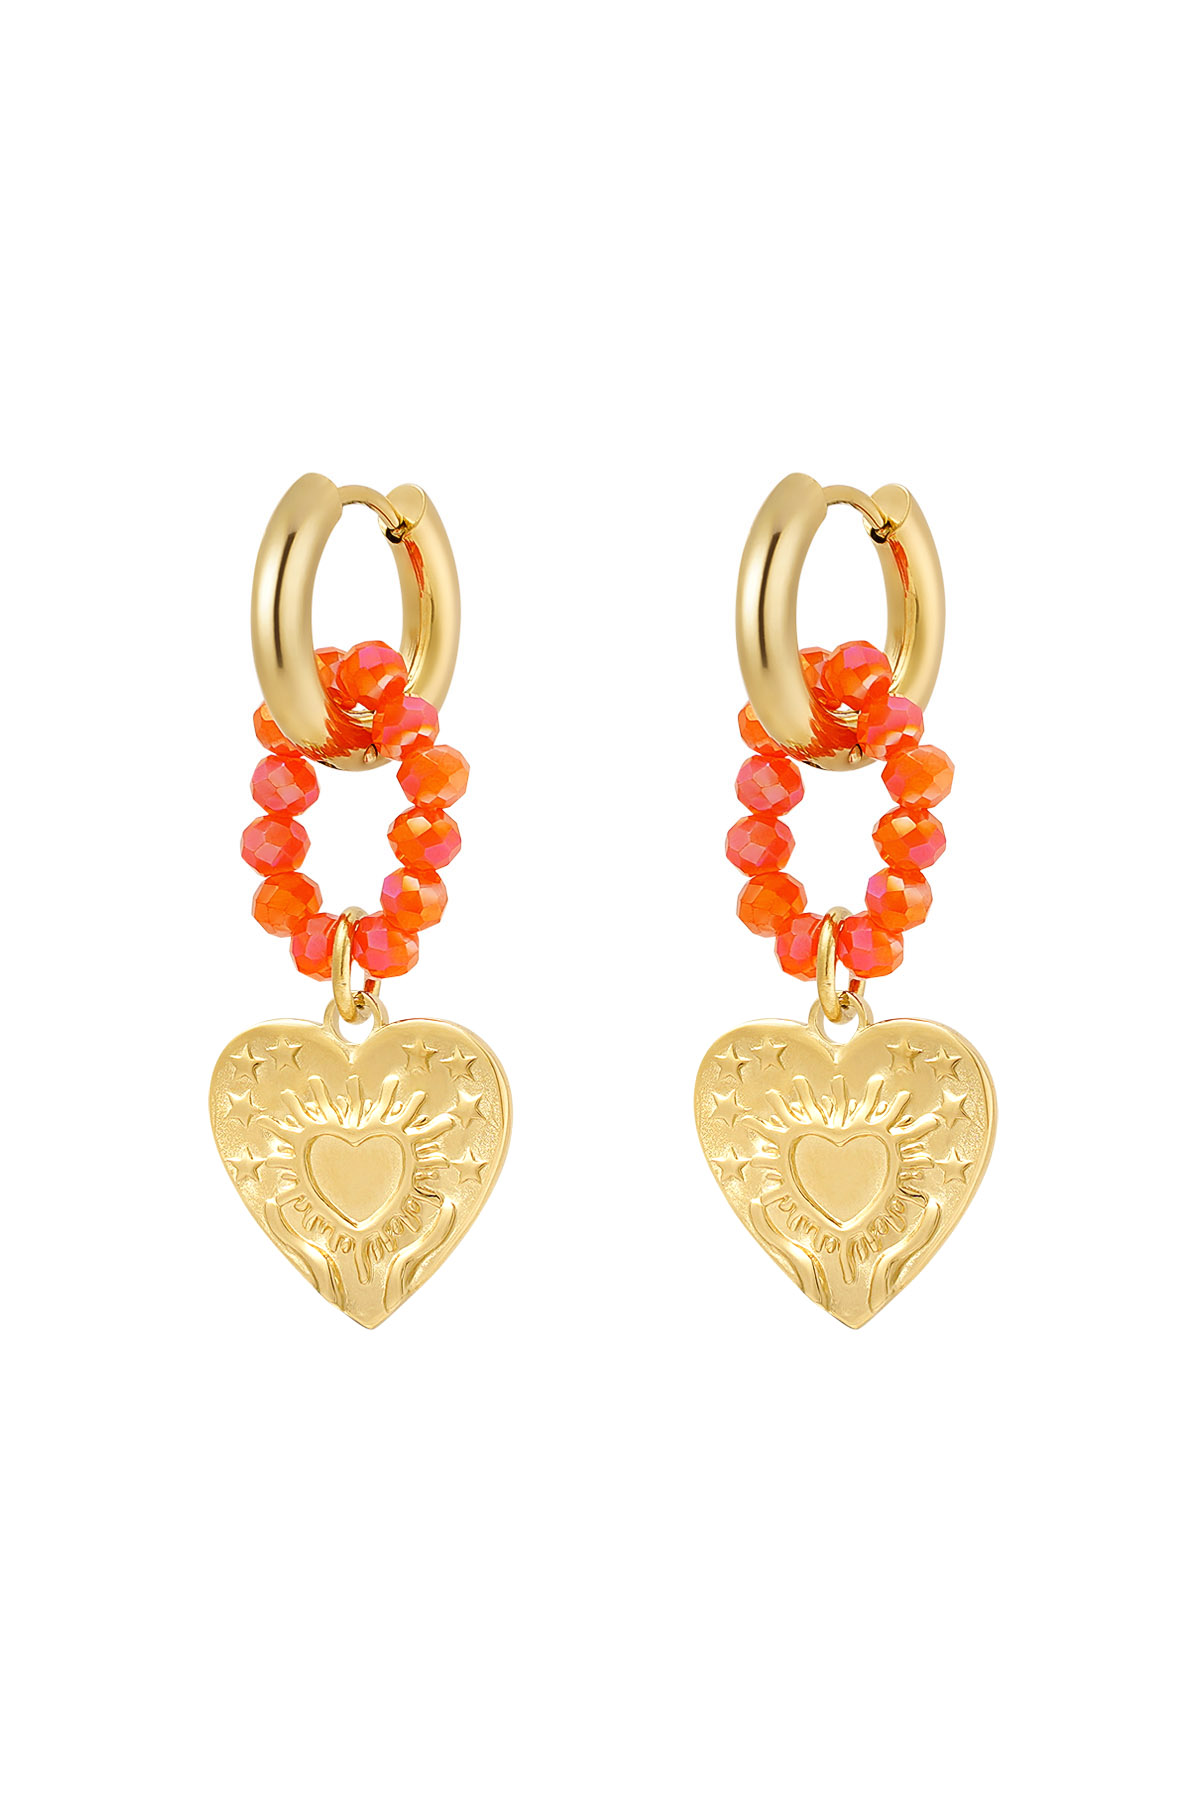 Boucles d'oreilles coeurs et perles orange - or